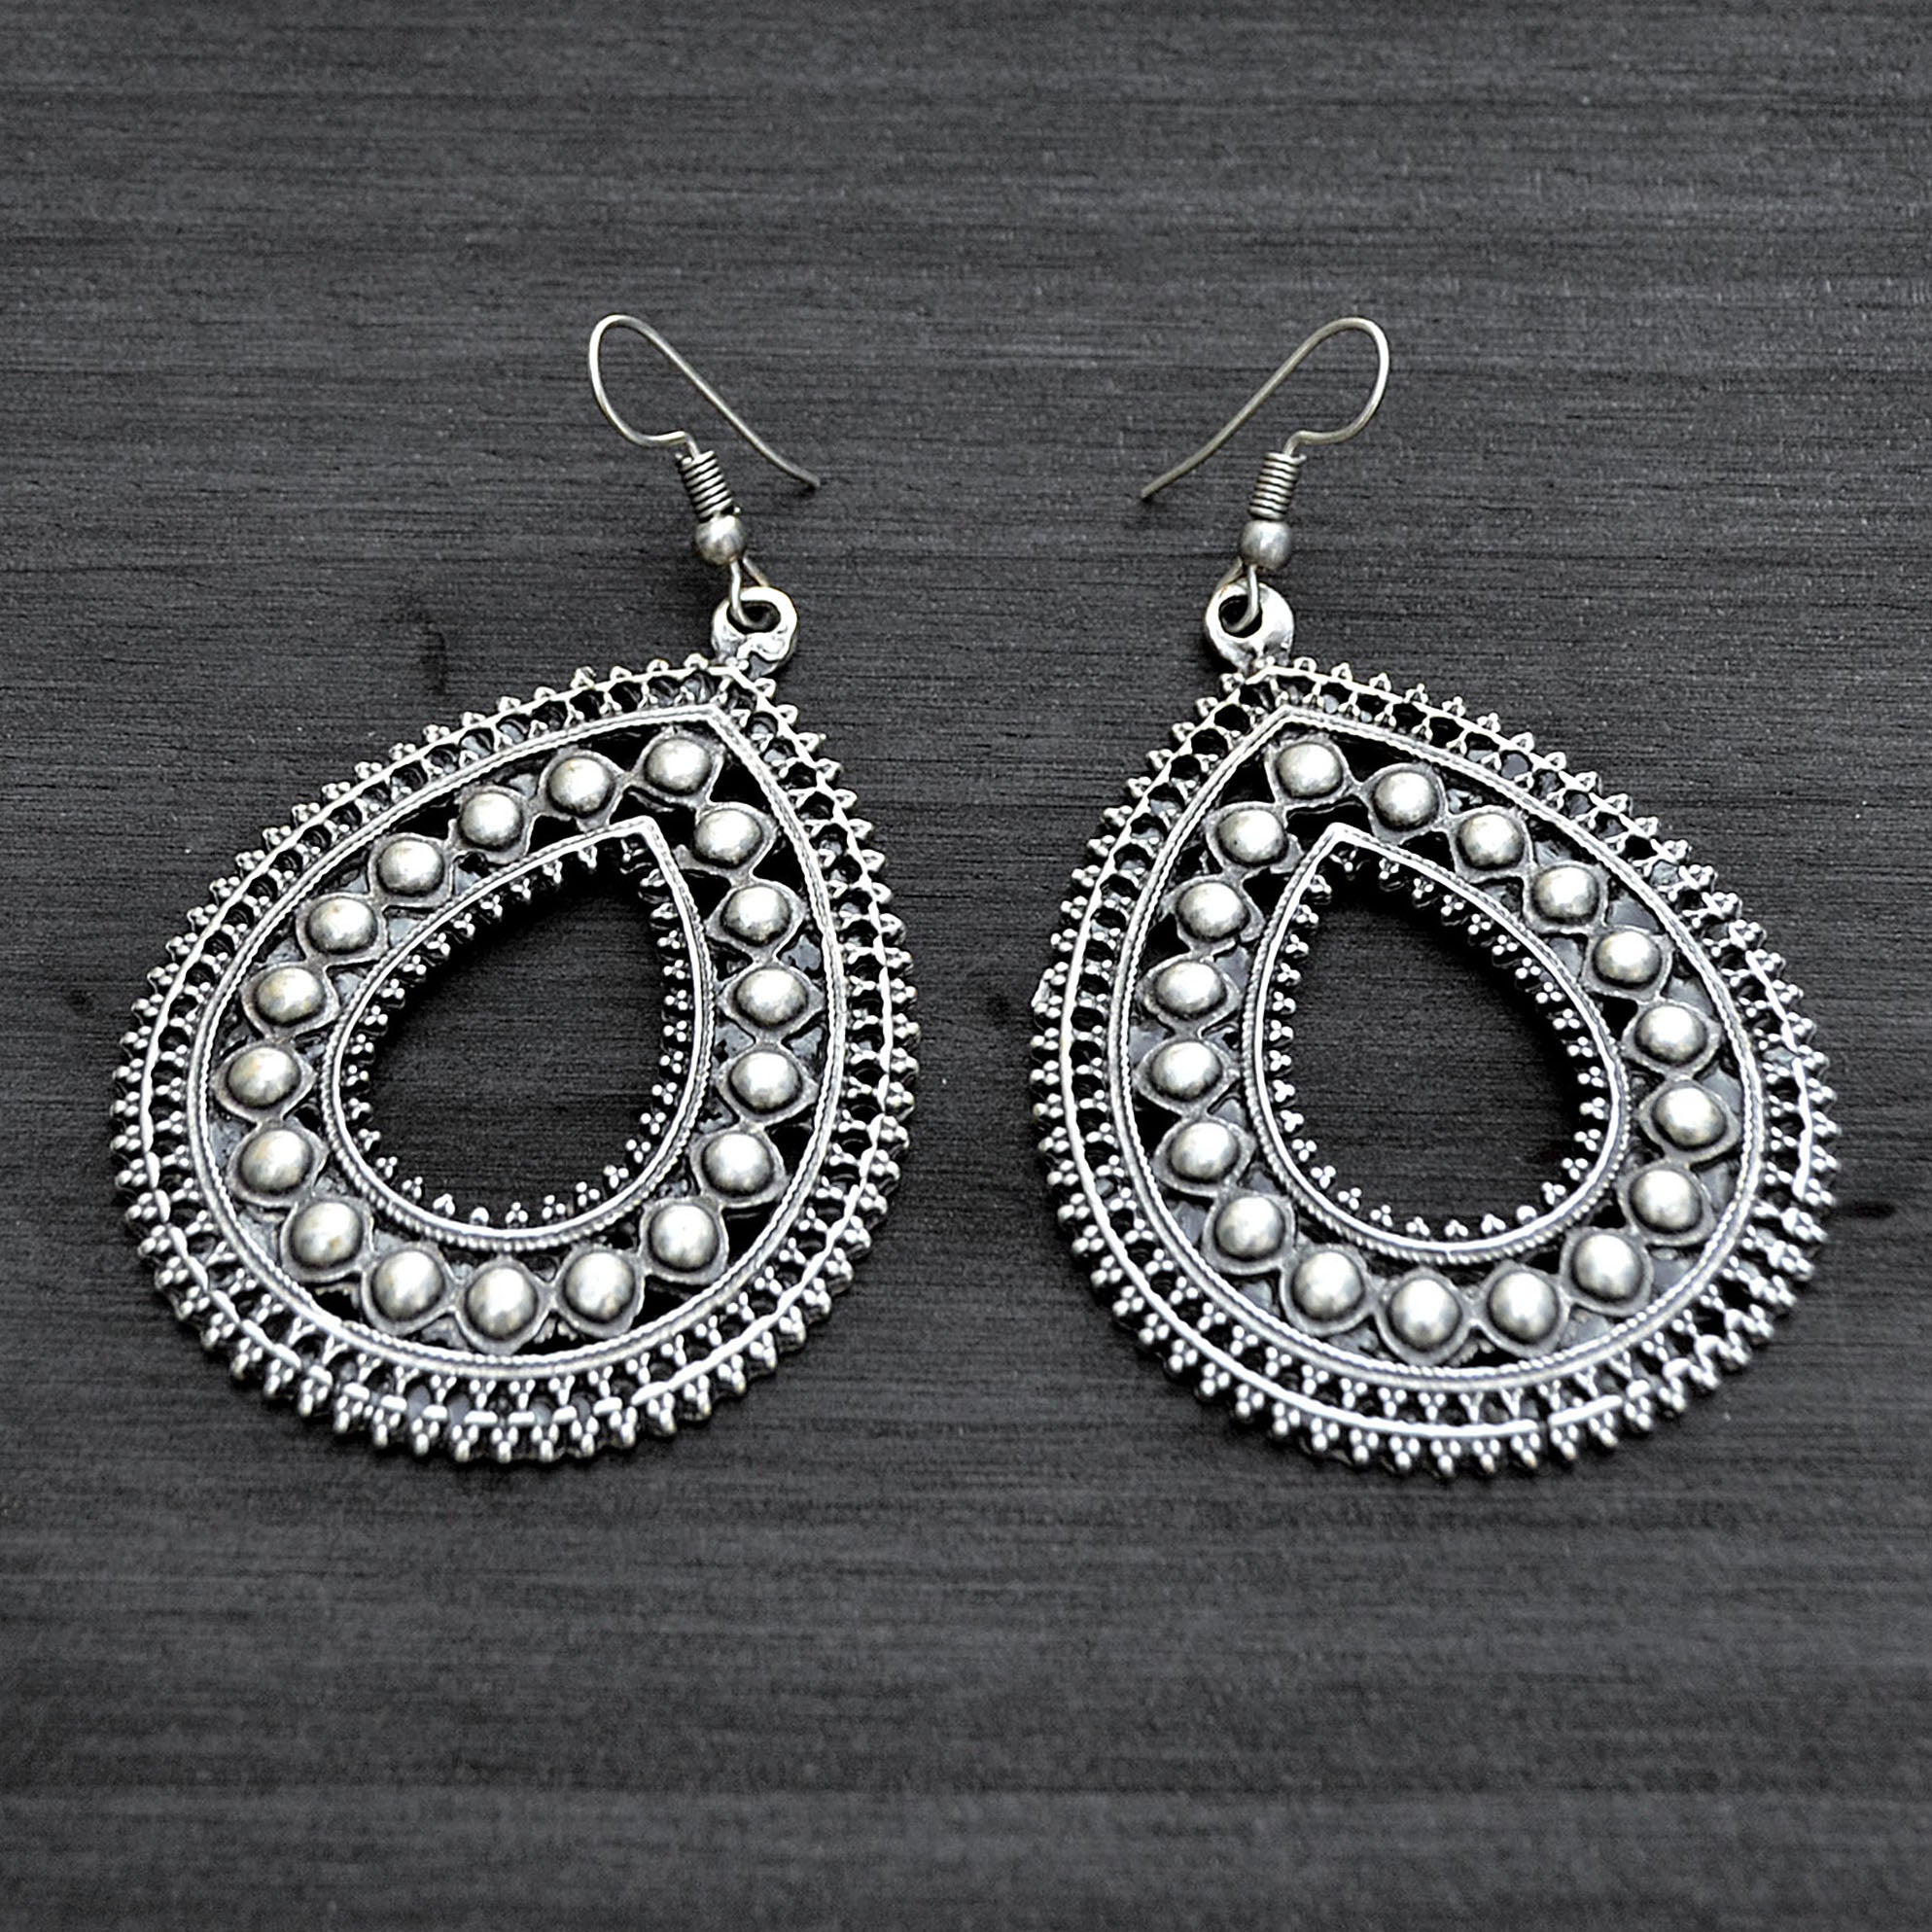 Silver ethnic drop earrings